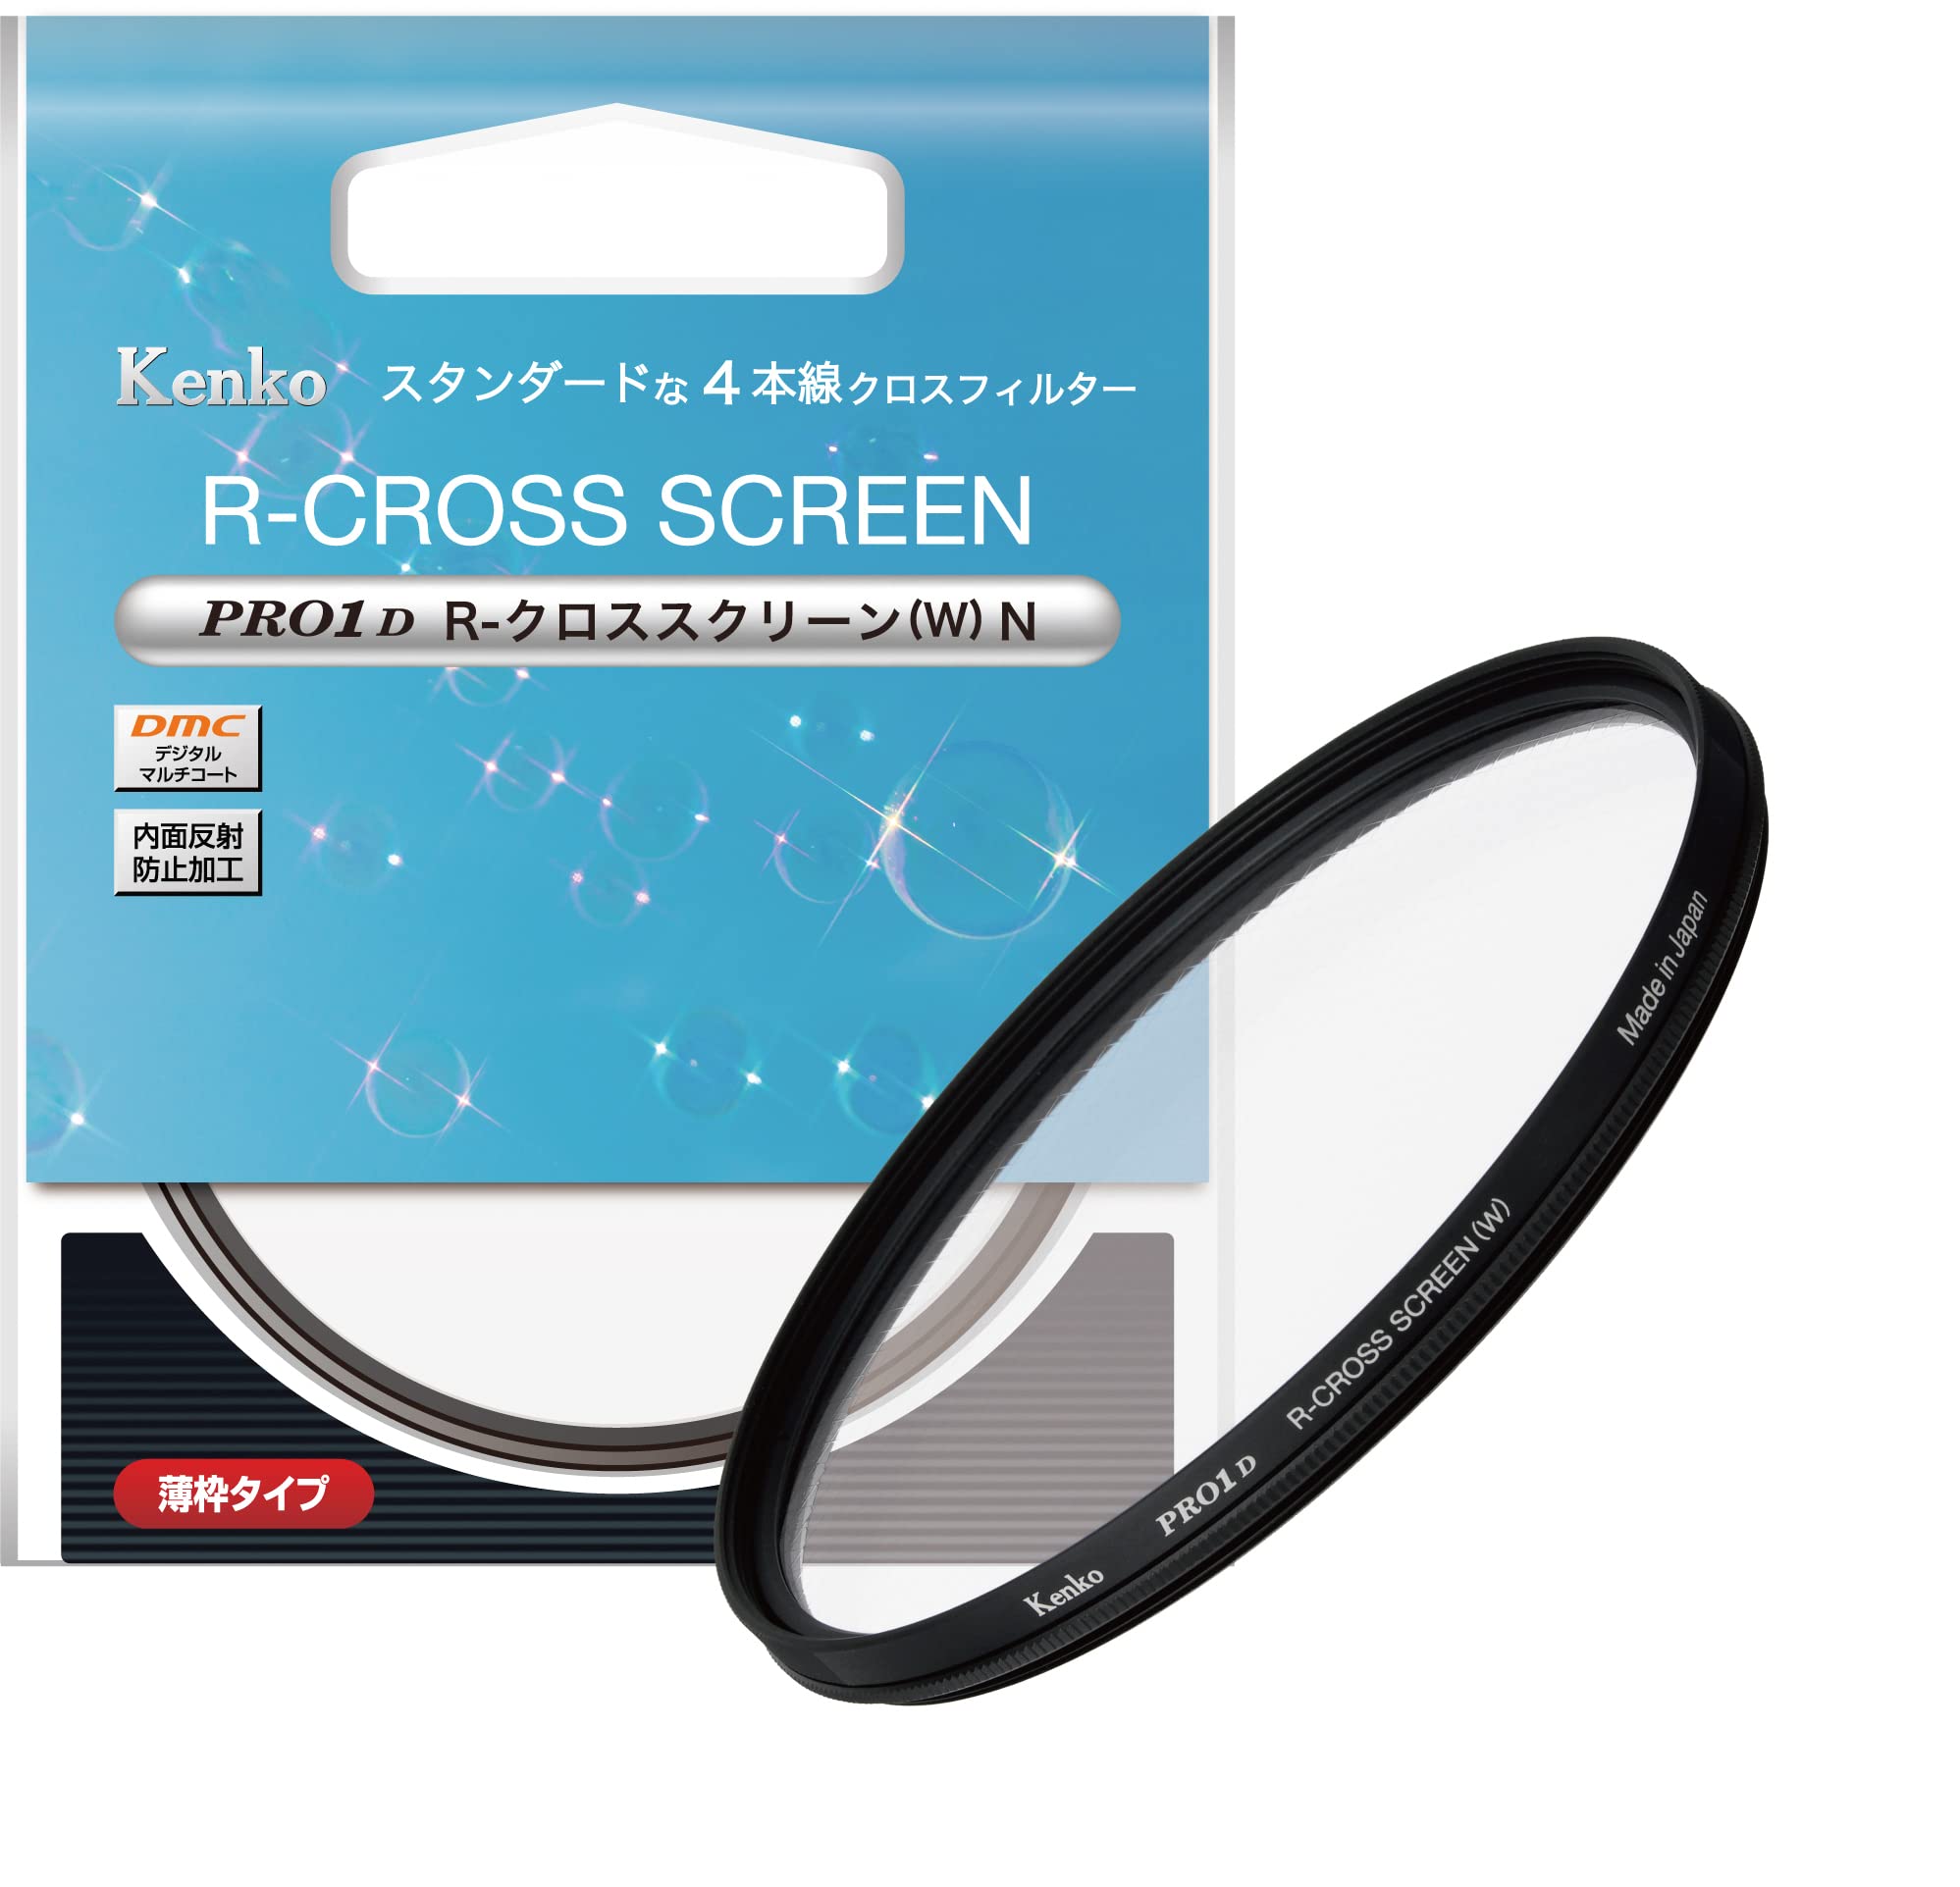 ケンコー(Kenko) クロスフィルター PRO1D R-クロススクリーン (W) N 49mm 4本クロス効果 夜景・イルミネーション・光の演出に 薄枠 82514